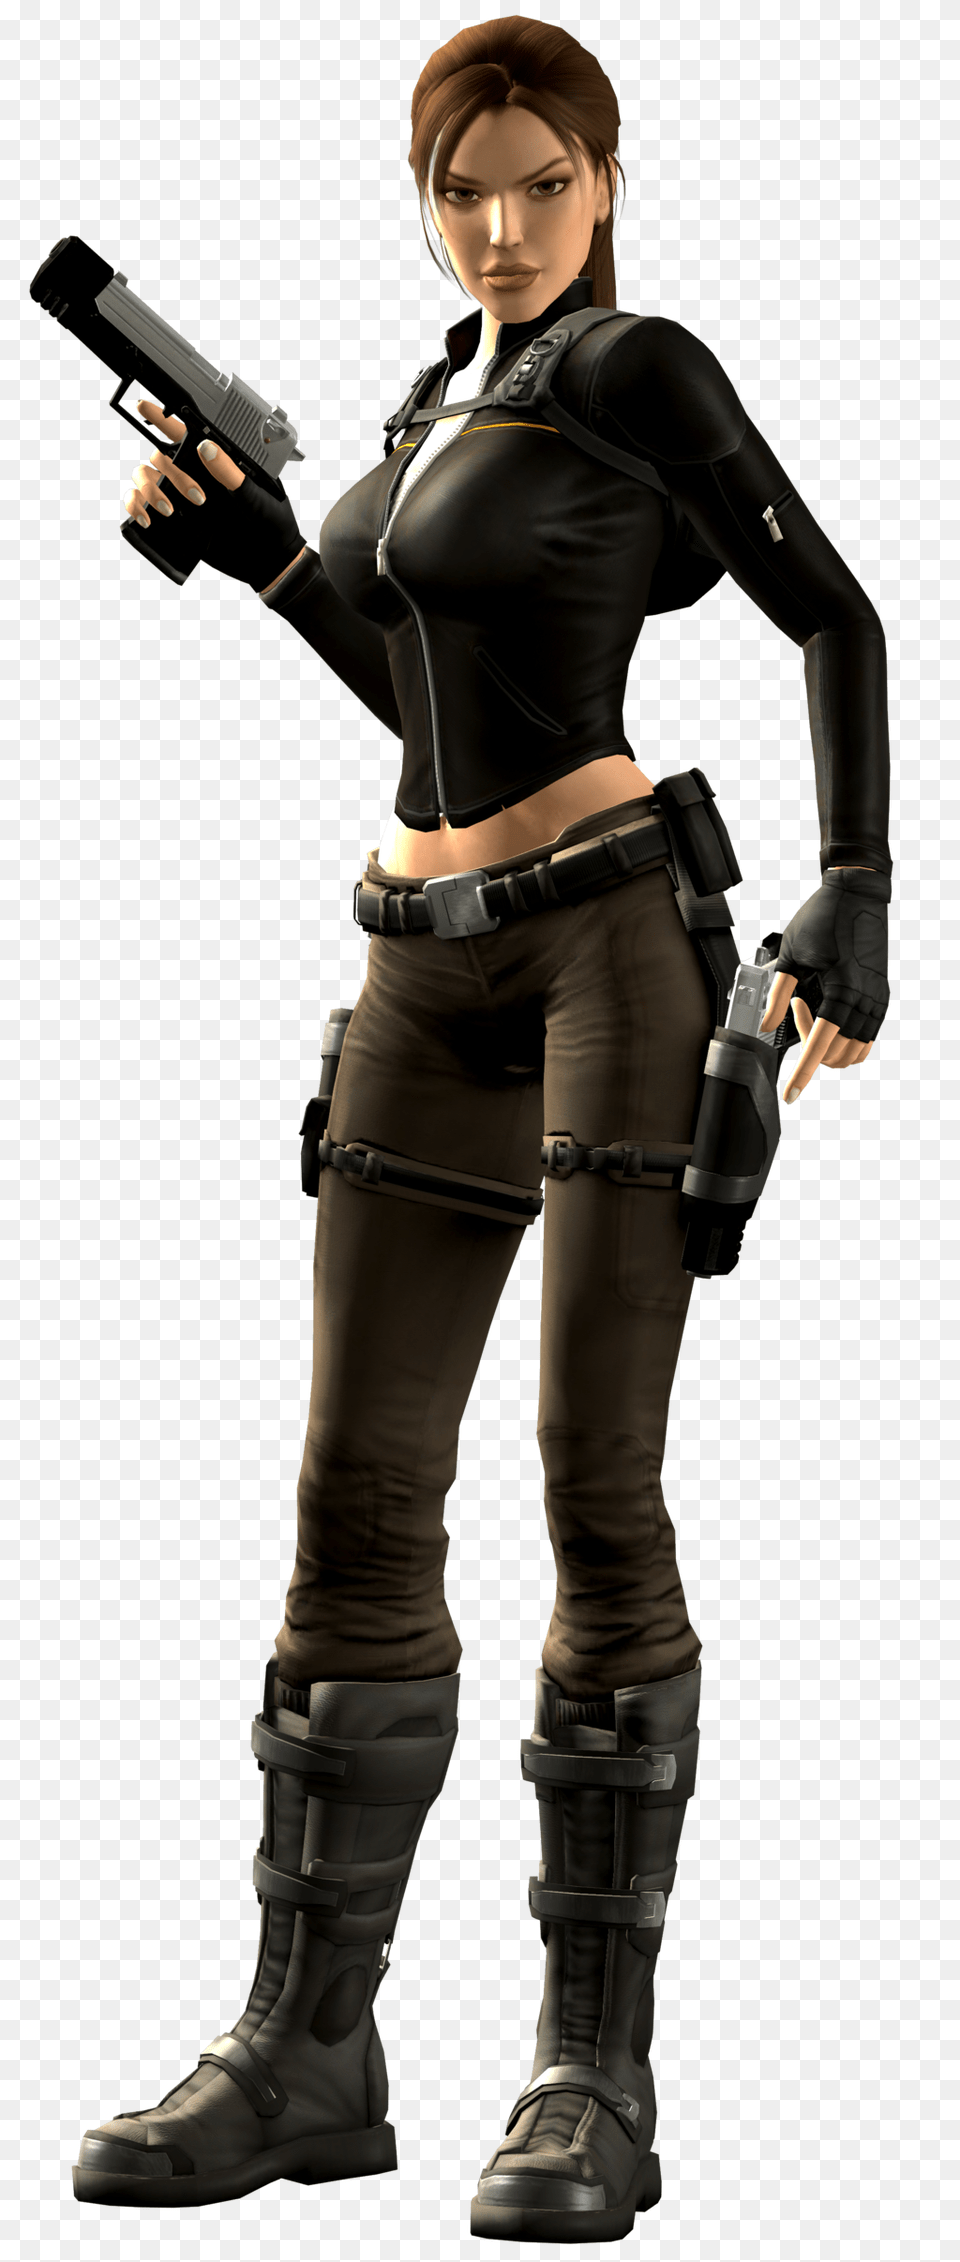 Lara Croft, Gun, Clothing, Costume, Weapon Free Png